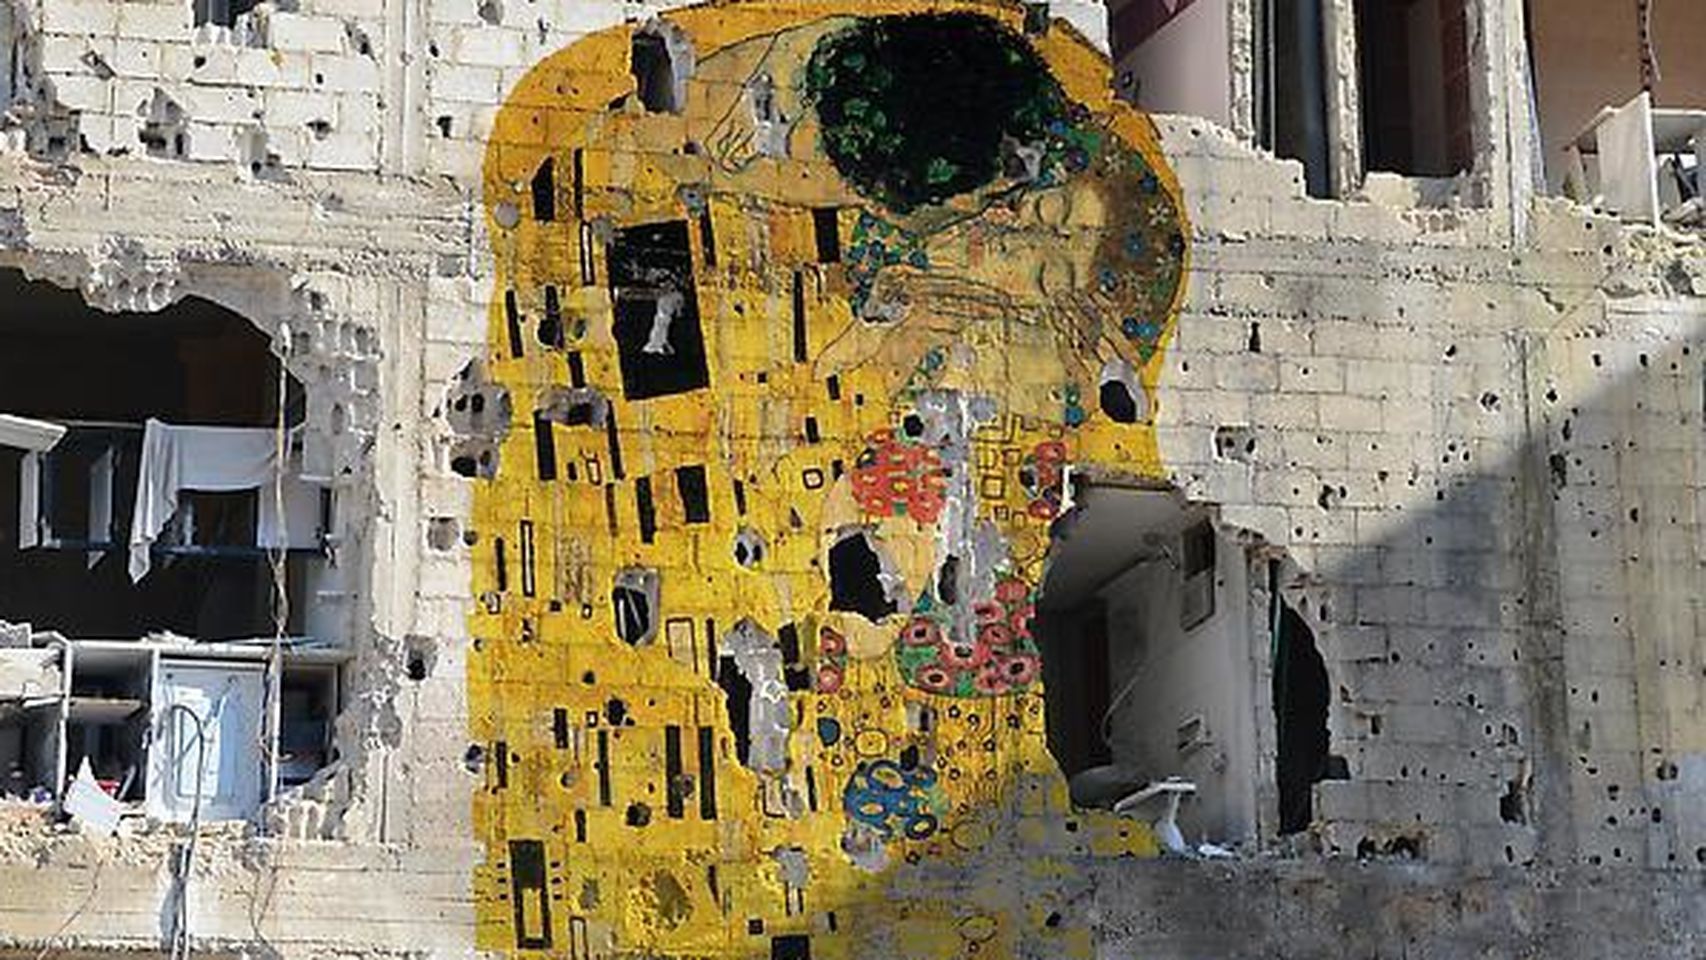 El beso de Klimt en ruinas. Fuente: www.elespanol.com